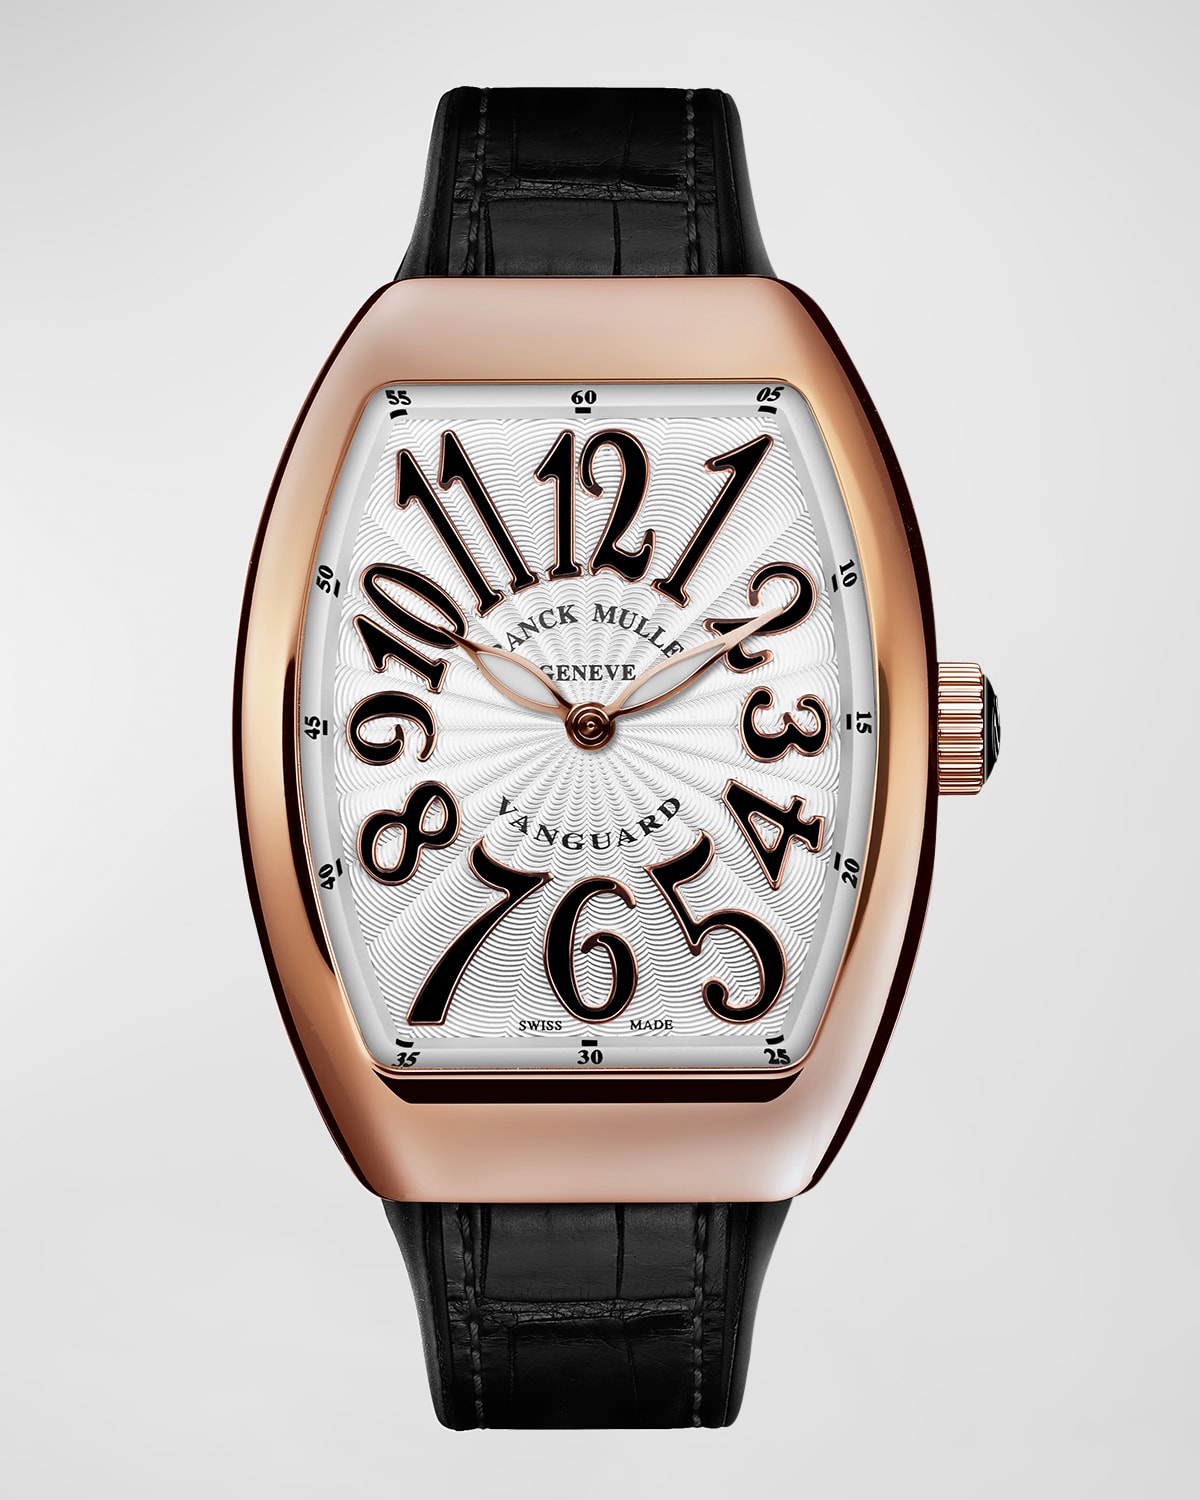 Franck Muller 18k Rose Gold Lady Vanguard Watch With Black Strap